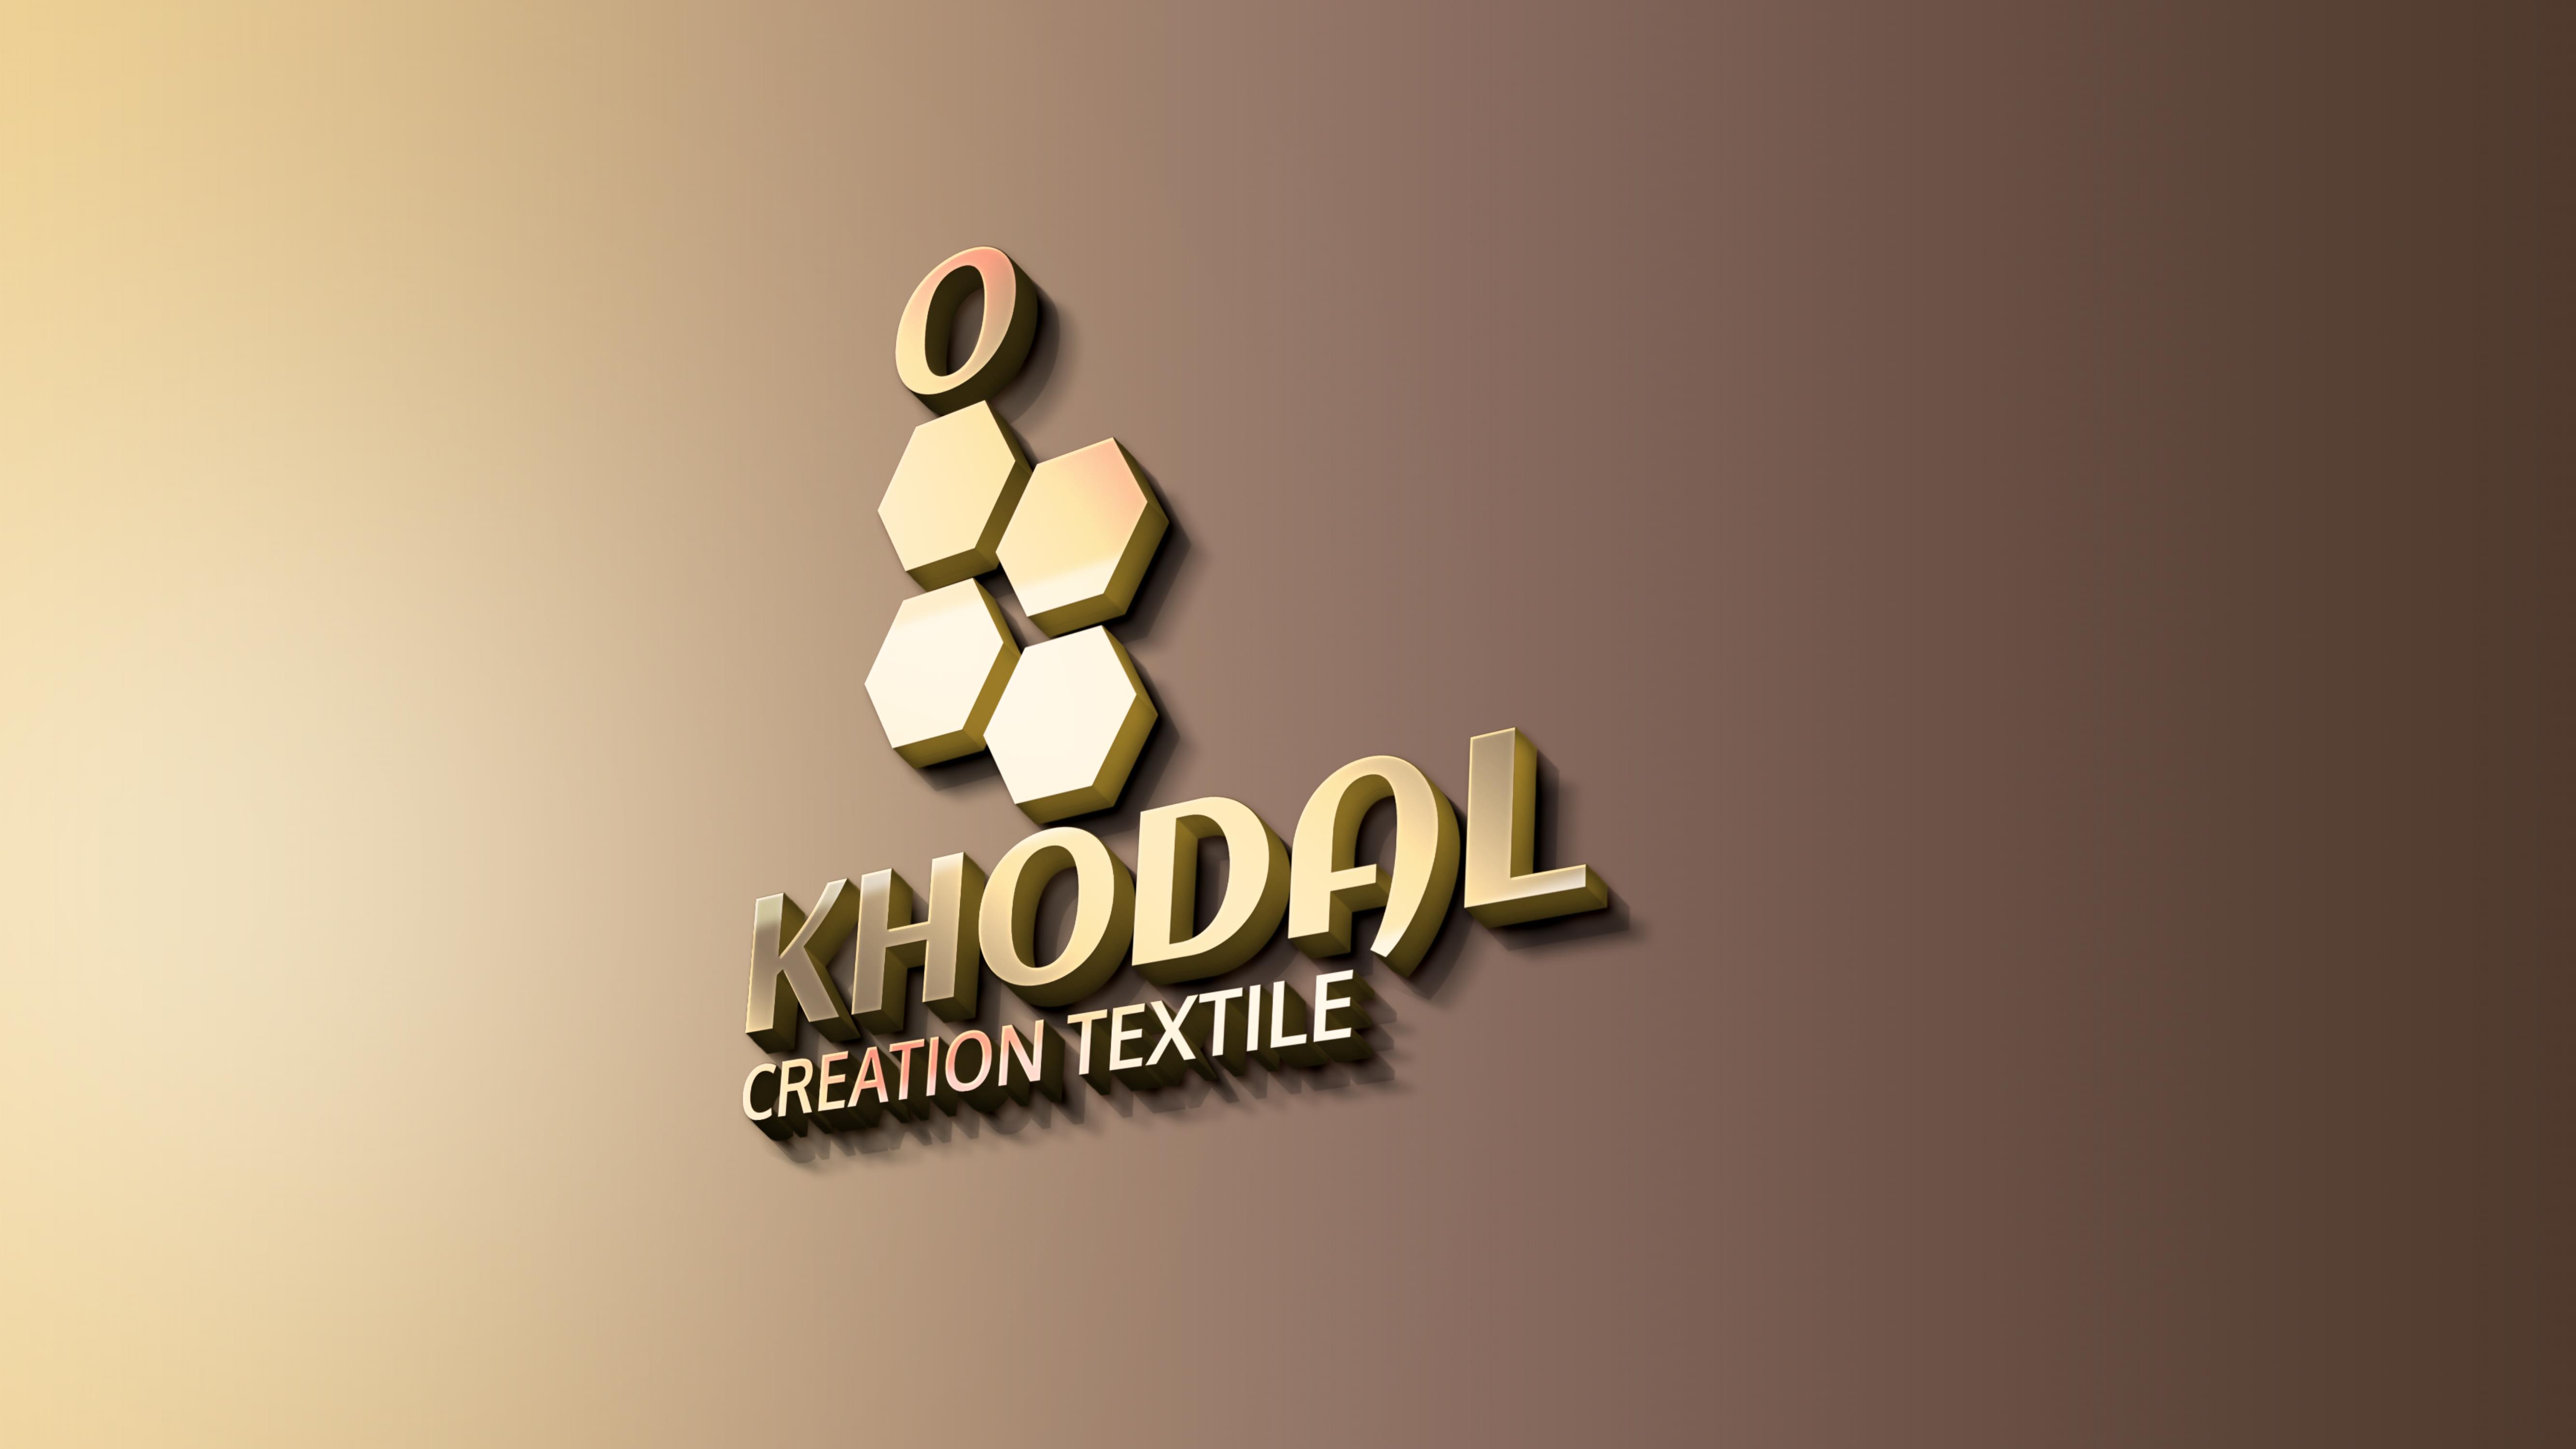 Khodal Creation